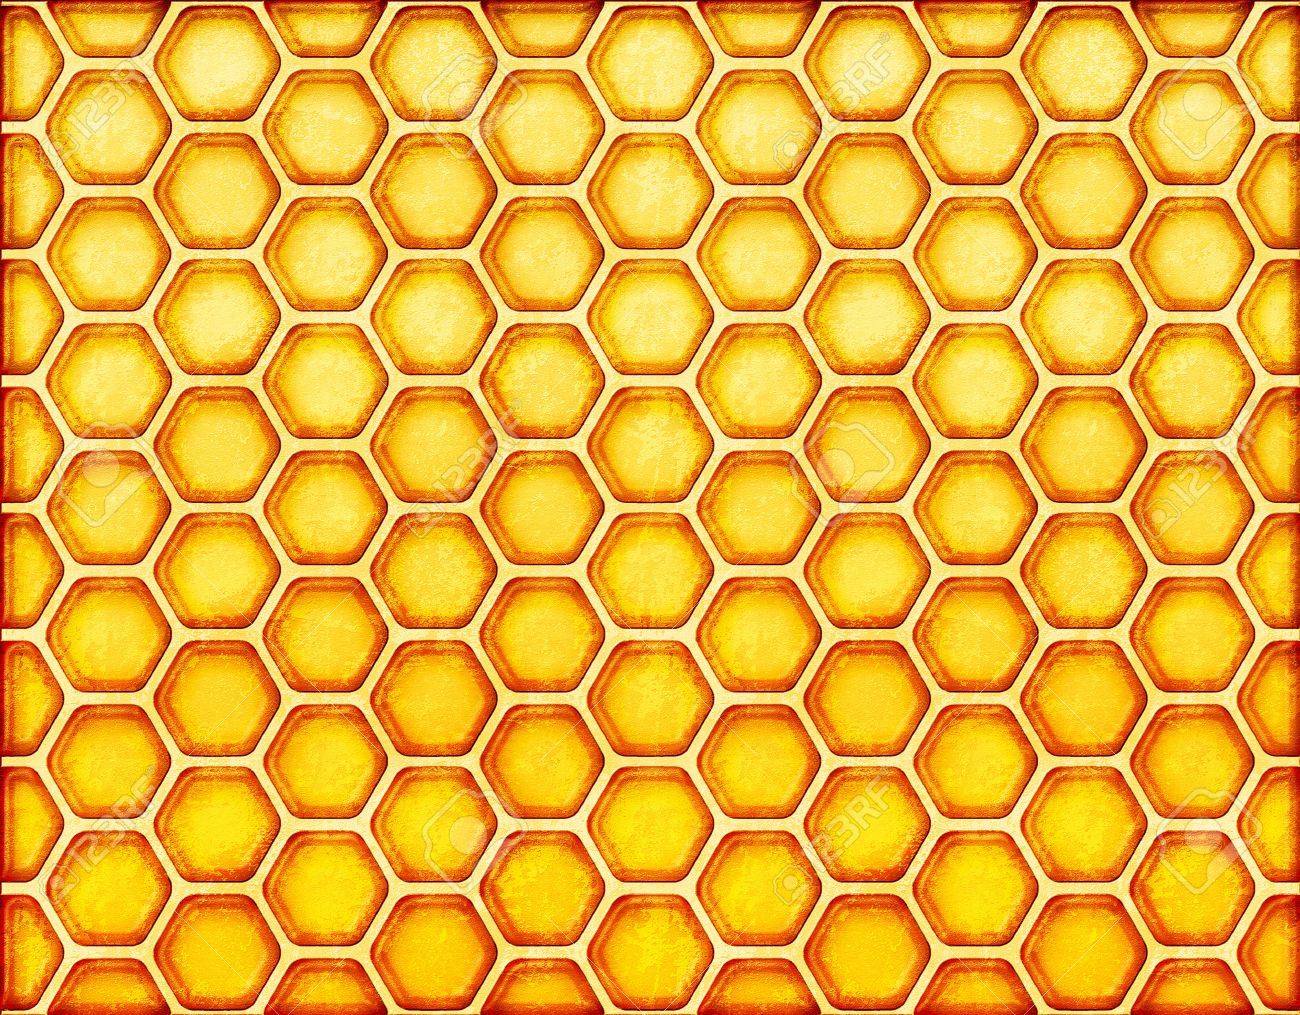 Honeycomb #6